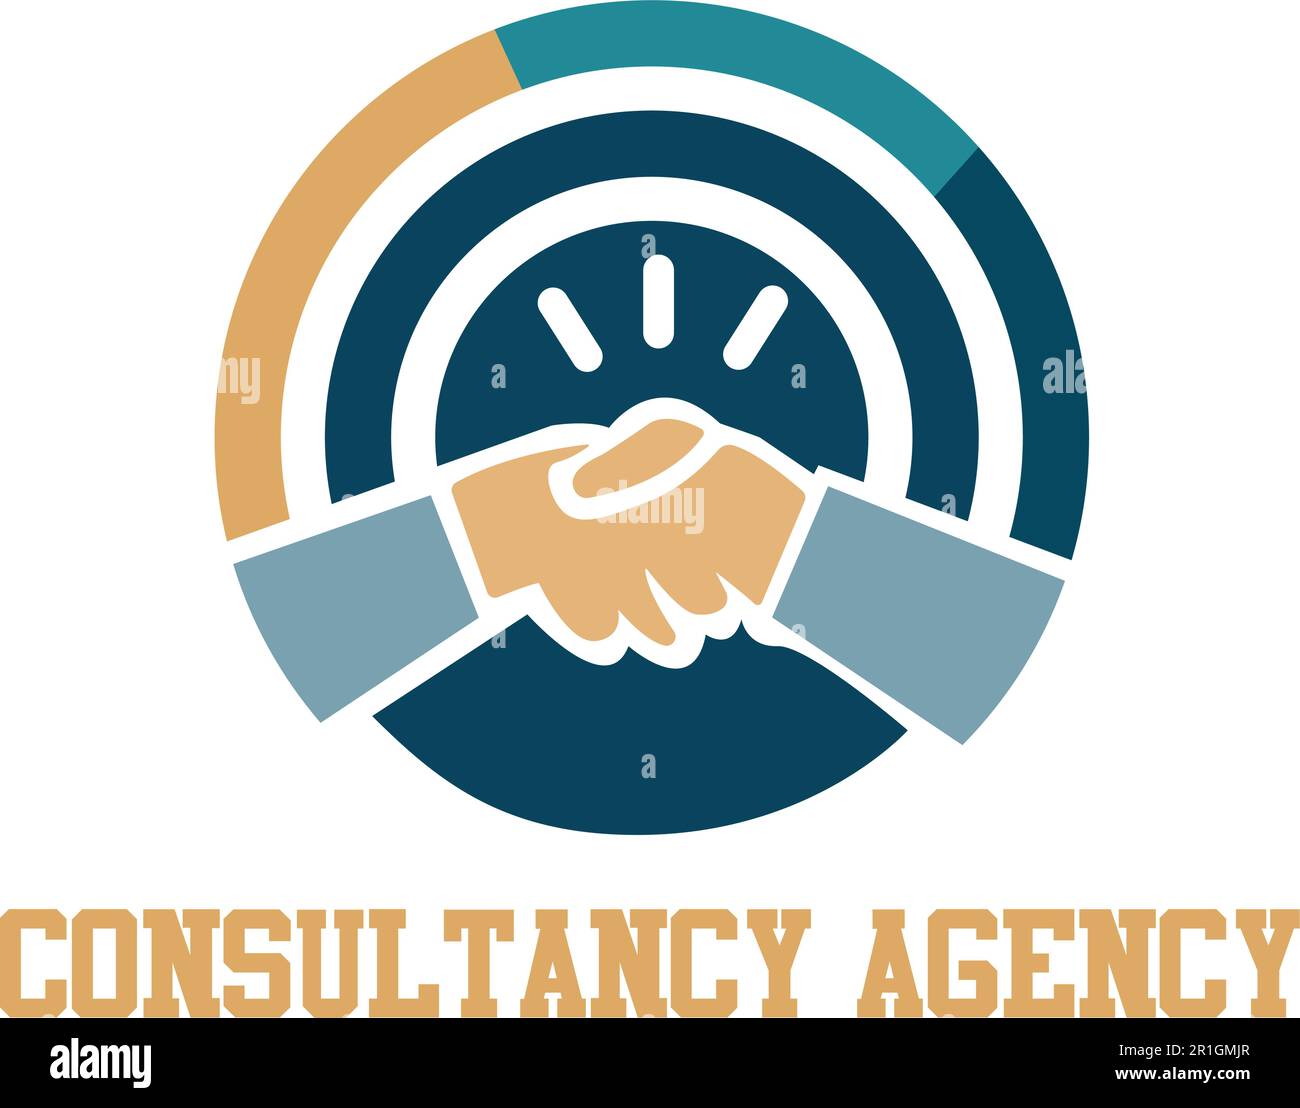 Il nostro modello di logo aziendale di Consultancy è la scelta perfetta per le agenzie di consulenza che desiderano stabilire un'identità di marchio forte e professionale. Illustrazione Vettoriale